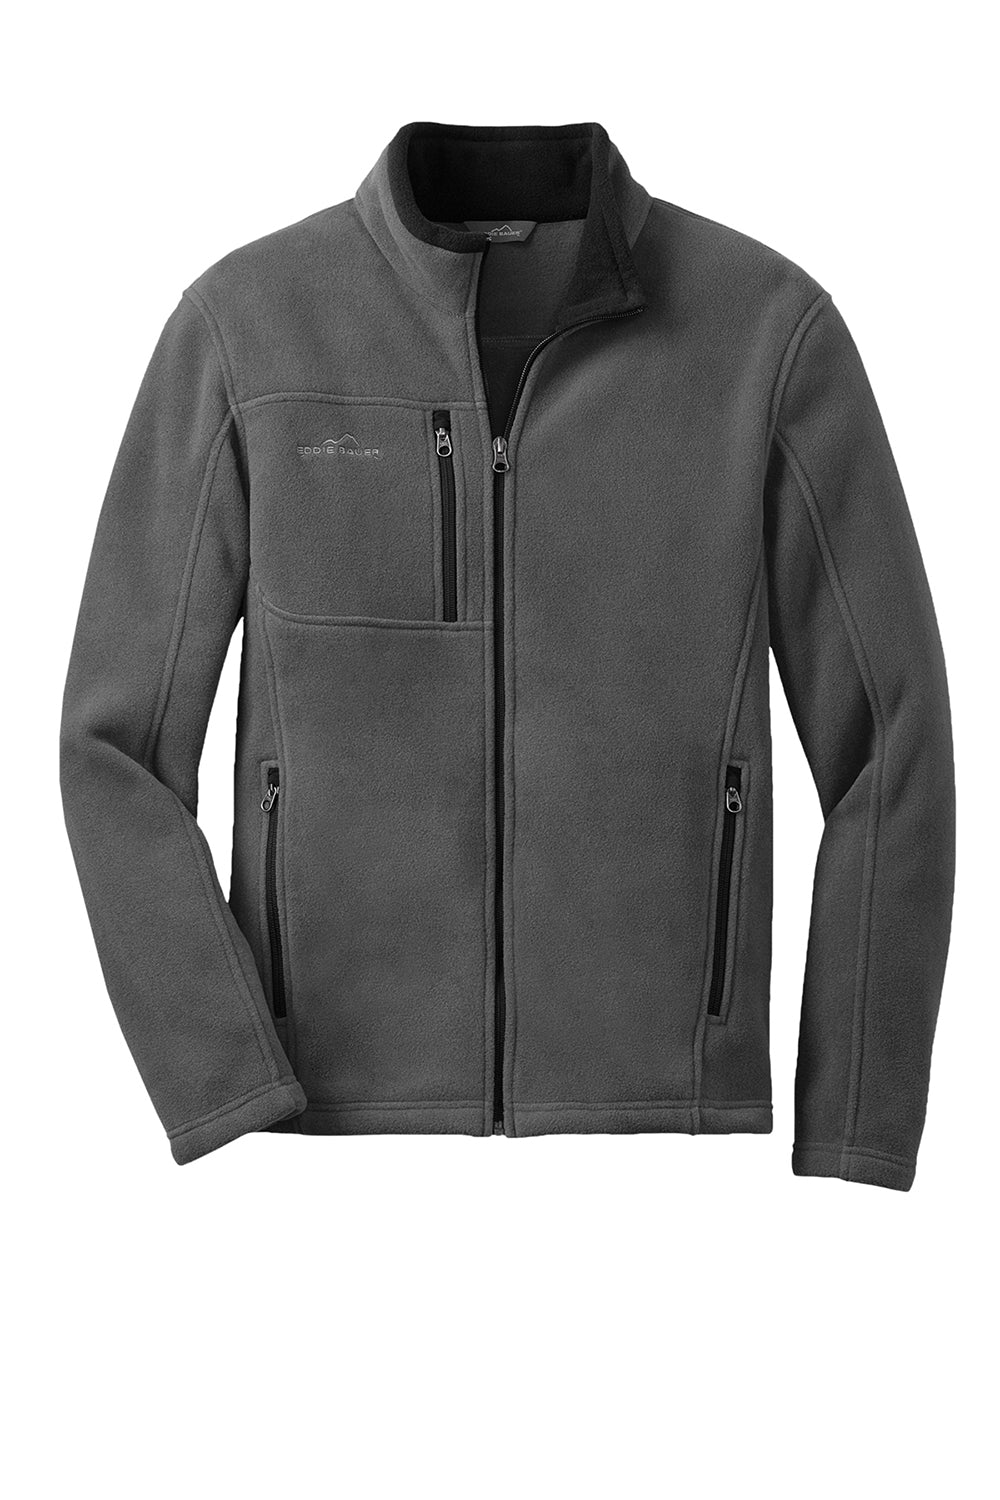 Eddie Bauer EB200 Mens Full Zip Fleece Jacket Steel Grey Flat Front